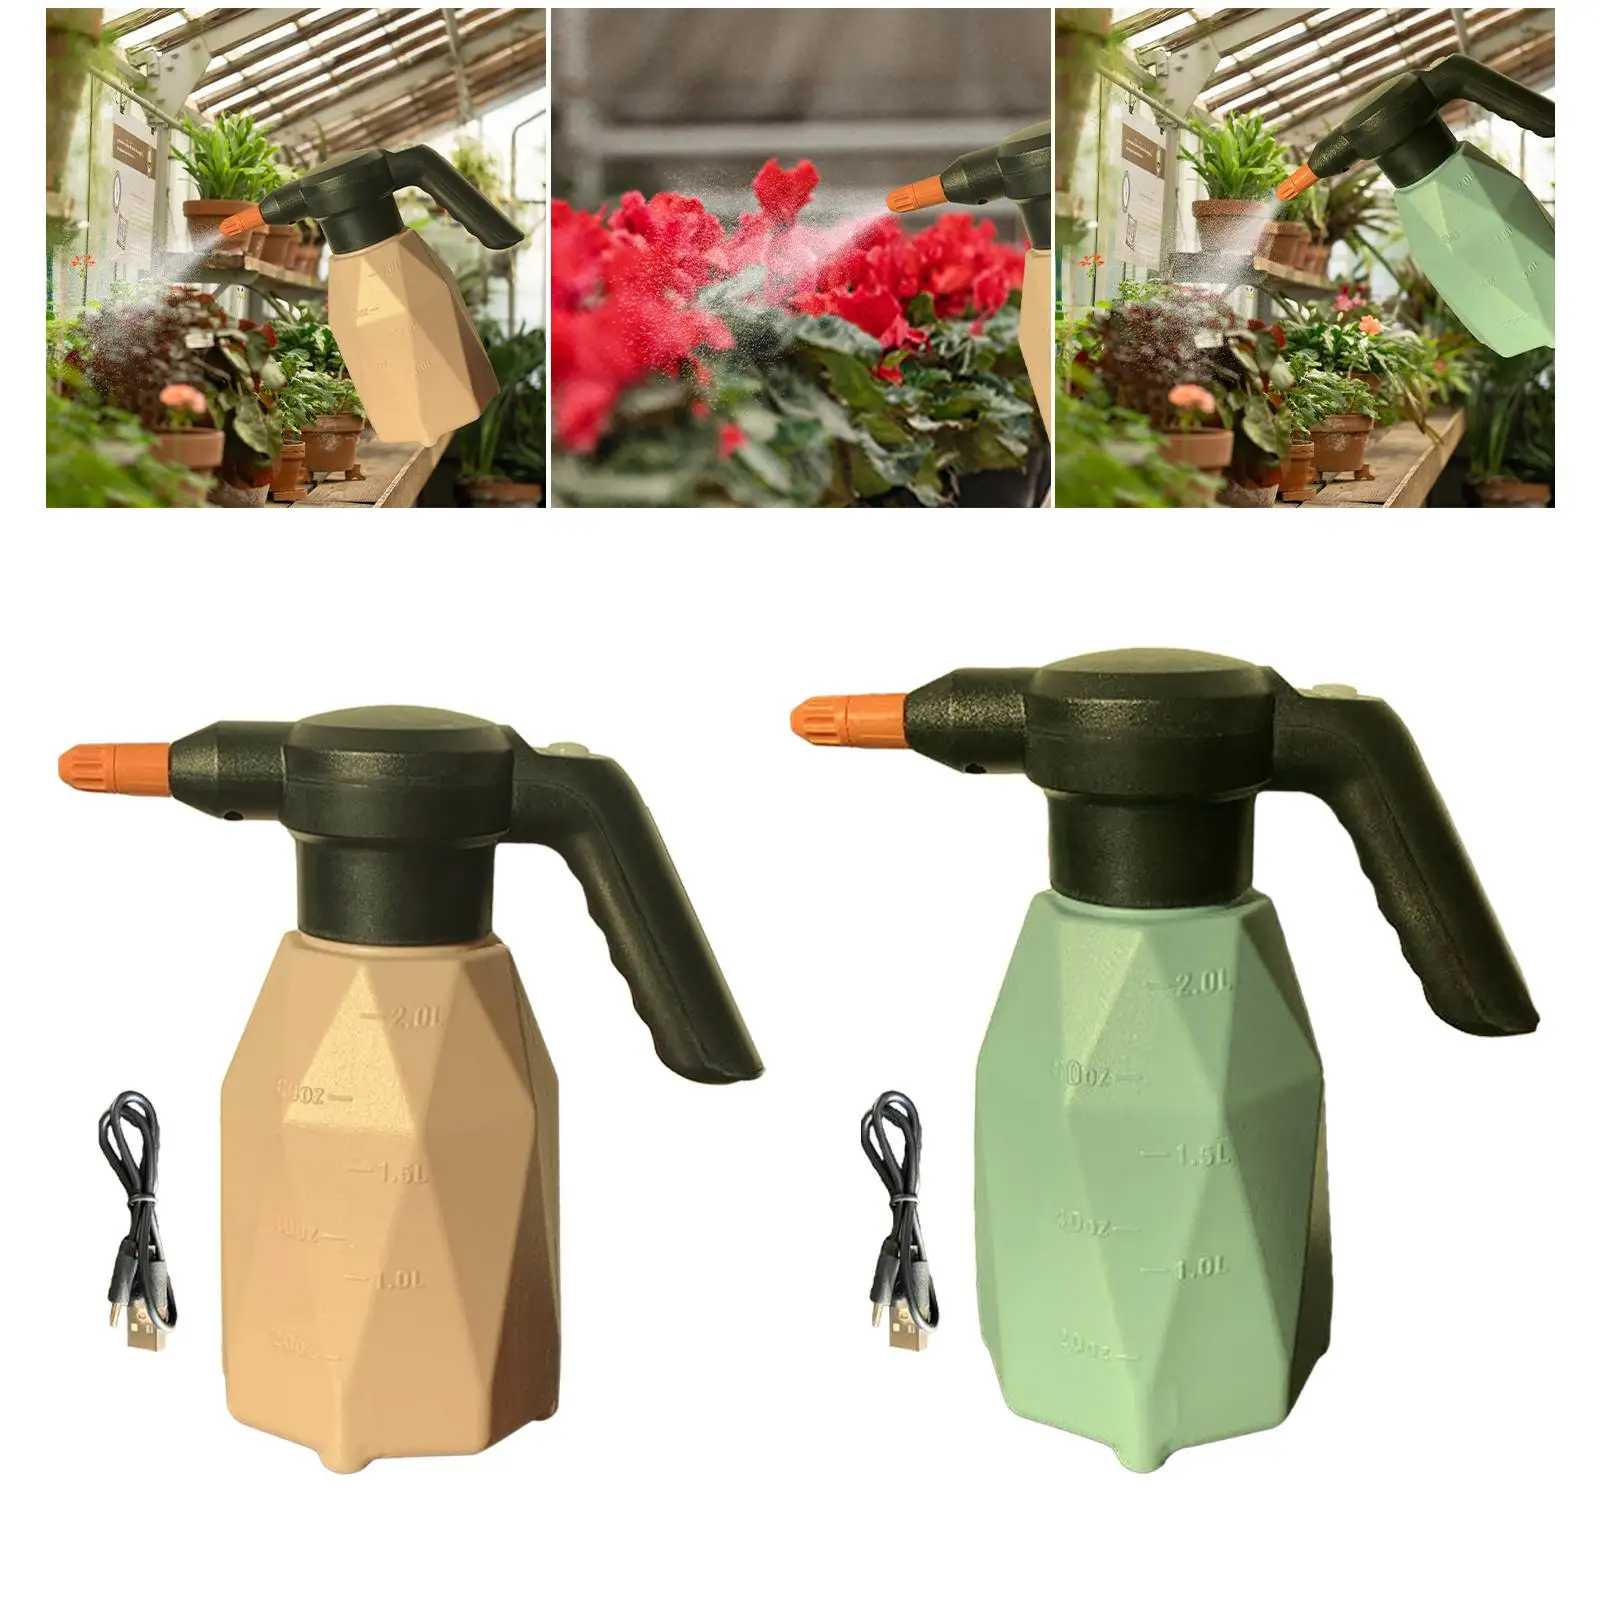 Elektrikli Püskürtücü Kullanımı kolay Dayanıklı Elektrikli Sprey Şişesi Bahçe Ev Temizlik Sulama Çiçek Araç Yıkama